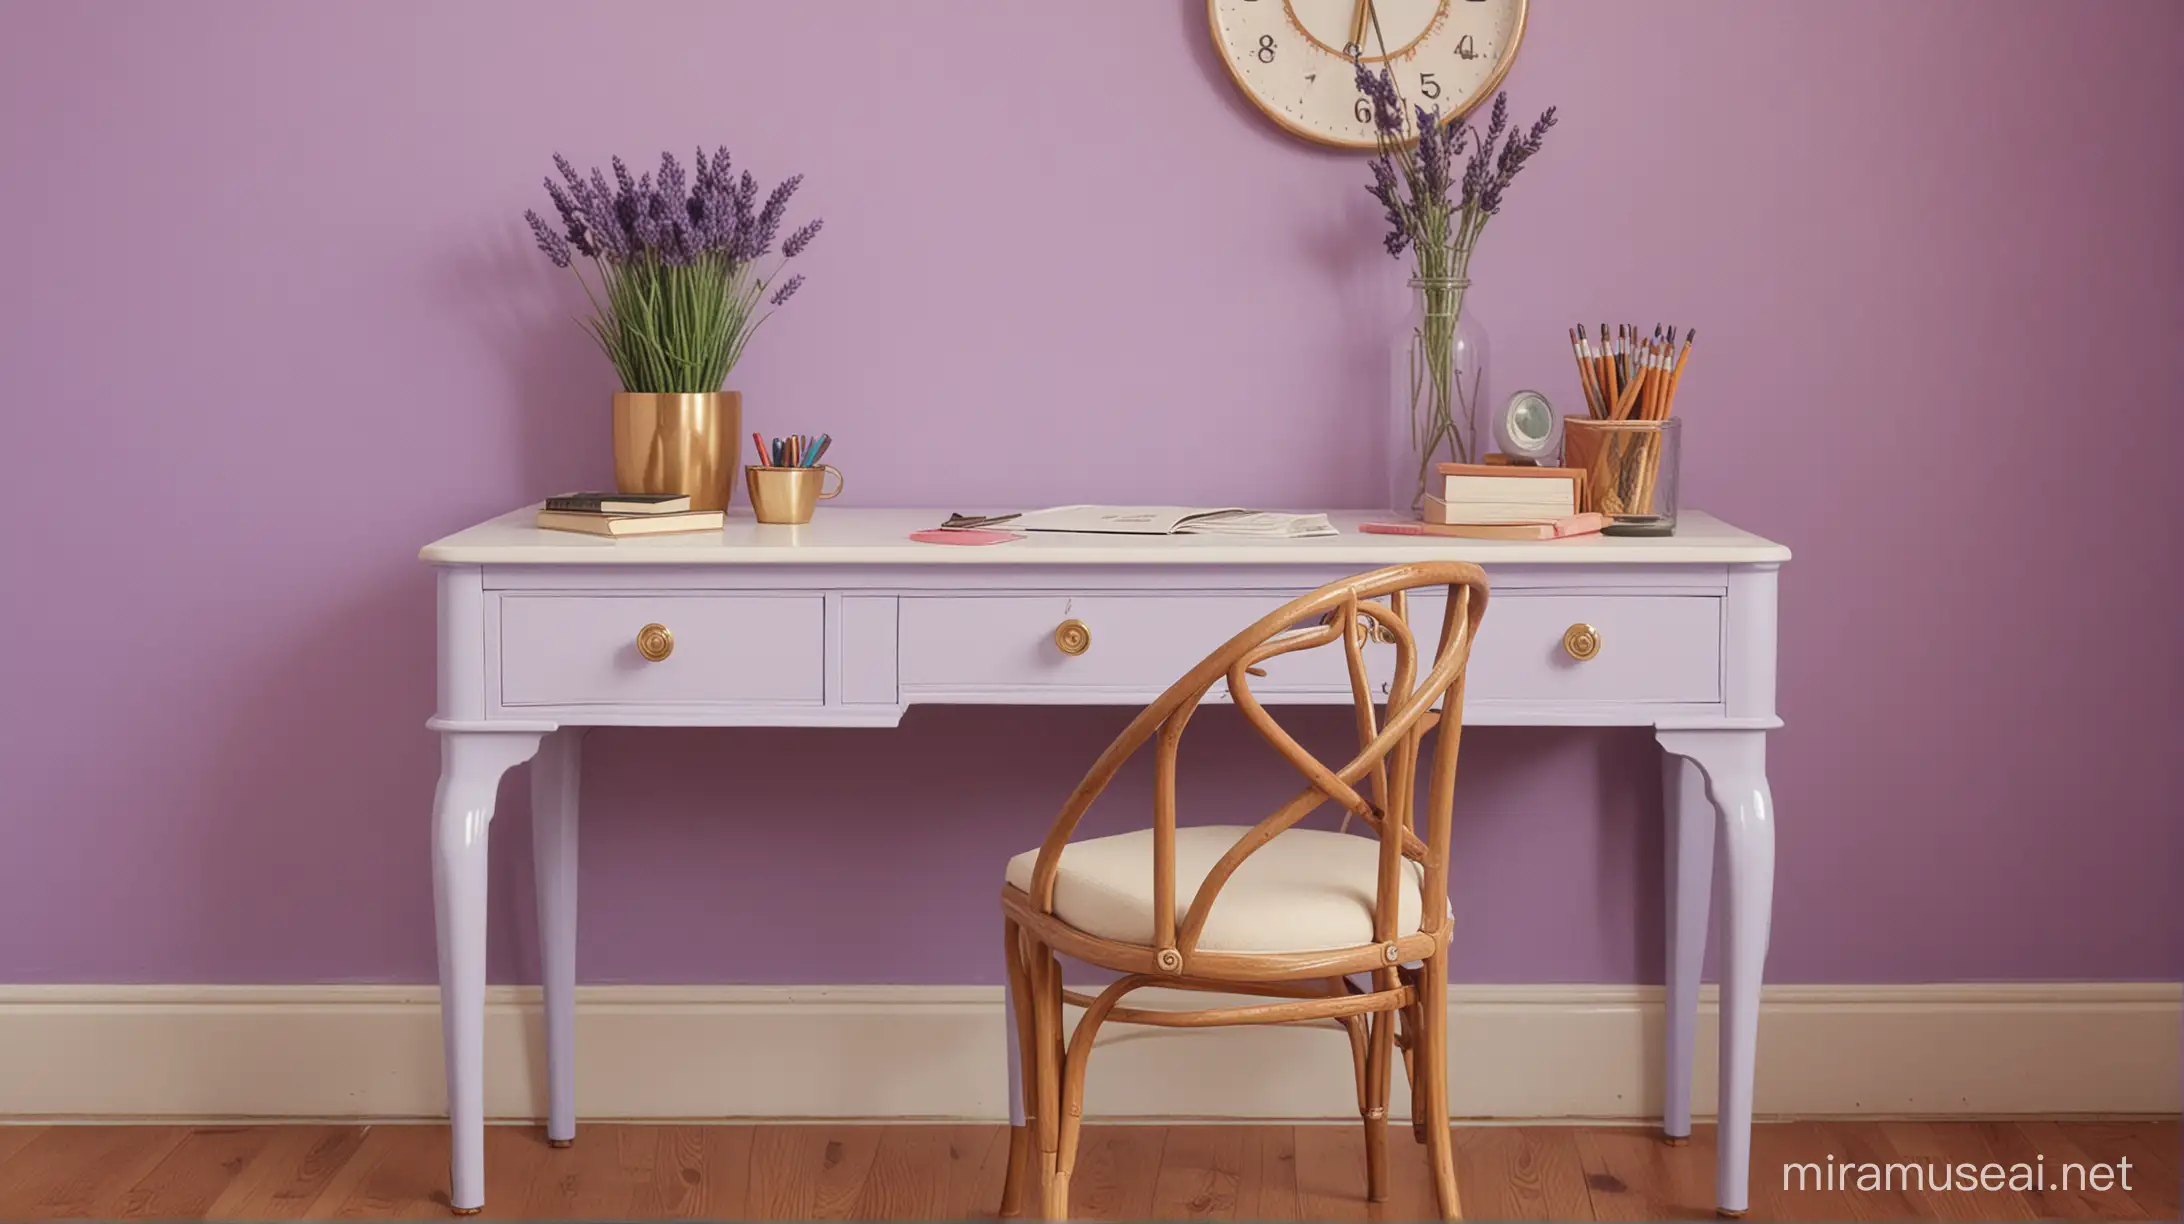 wes anderson inspired lavender desk 